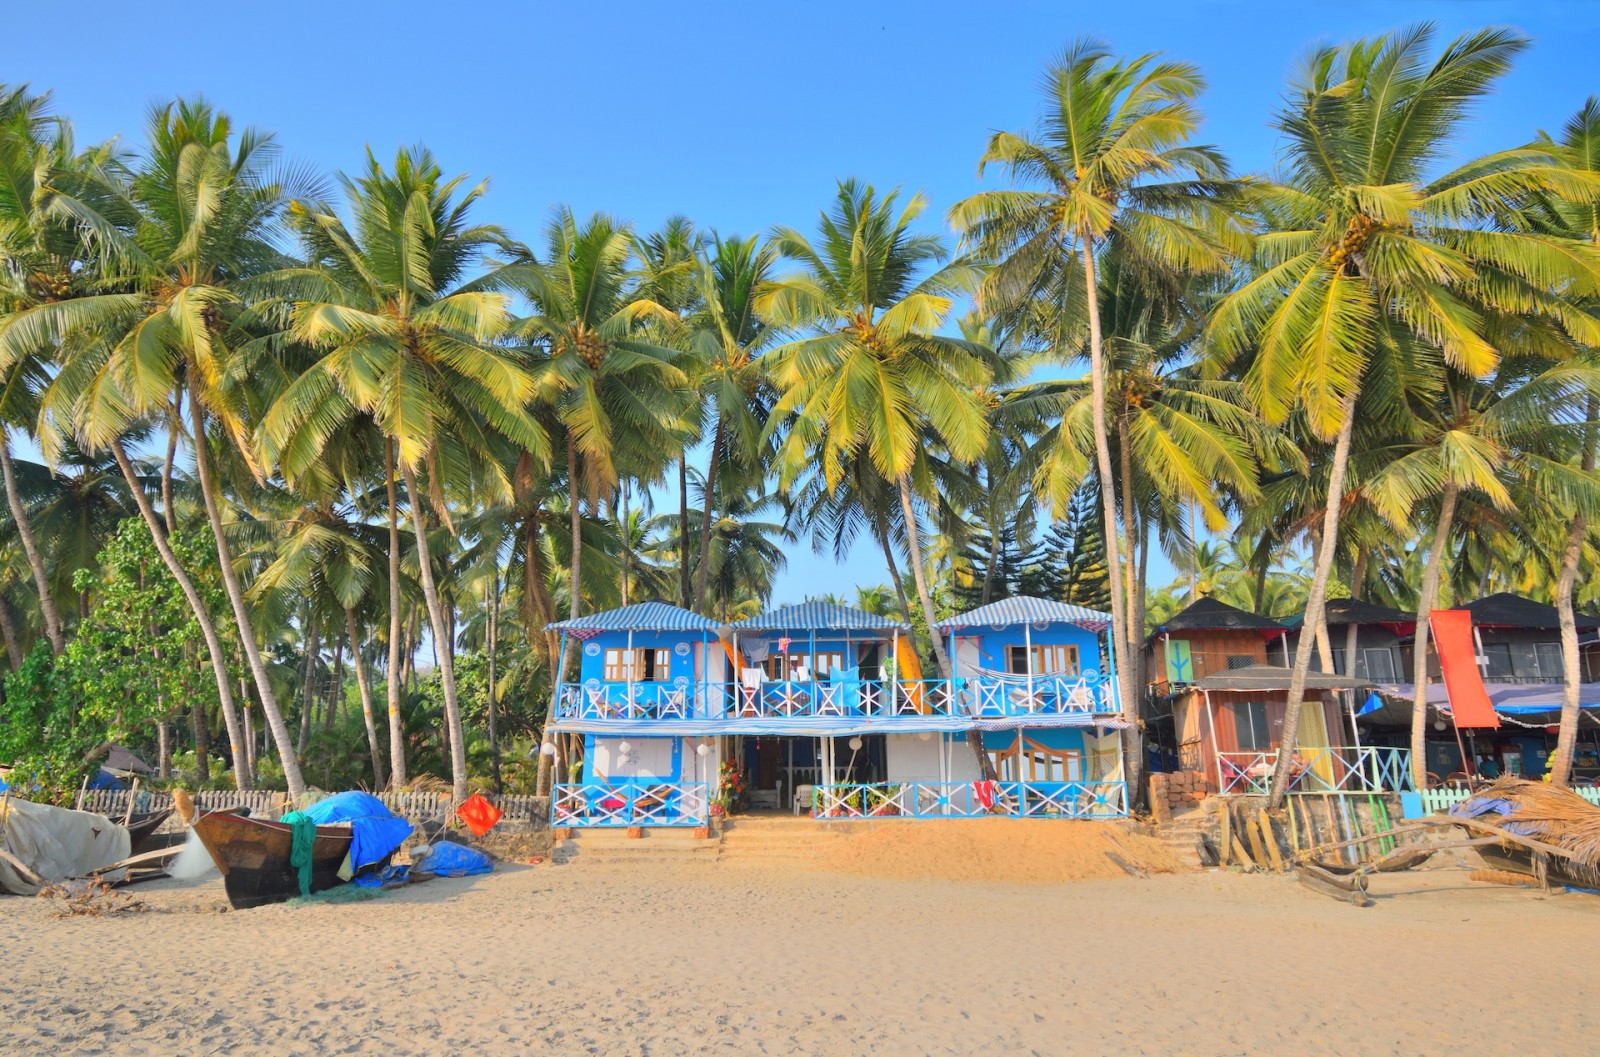 Cabines de plage colorées sur la plage de Palolem, Goa